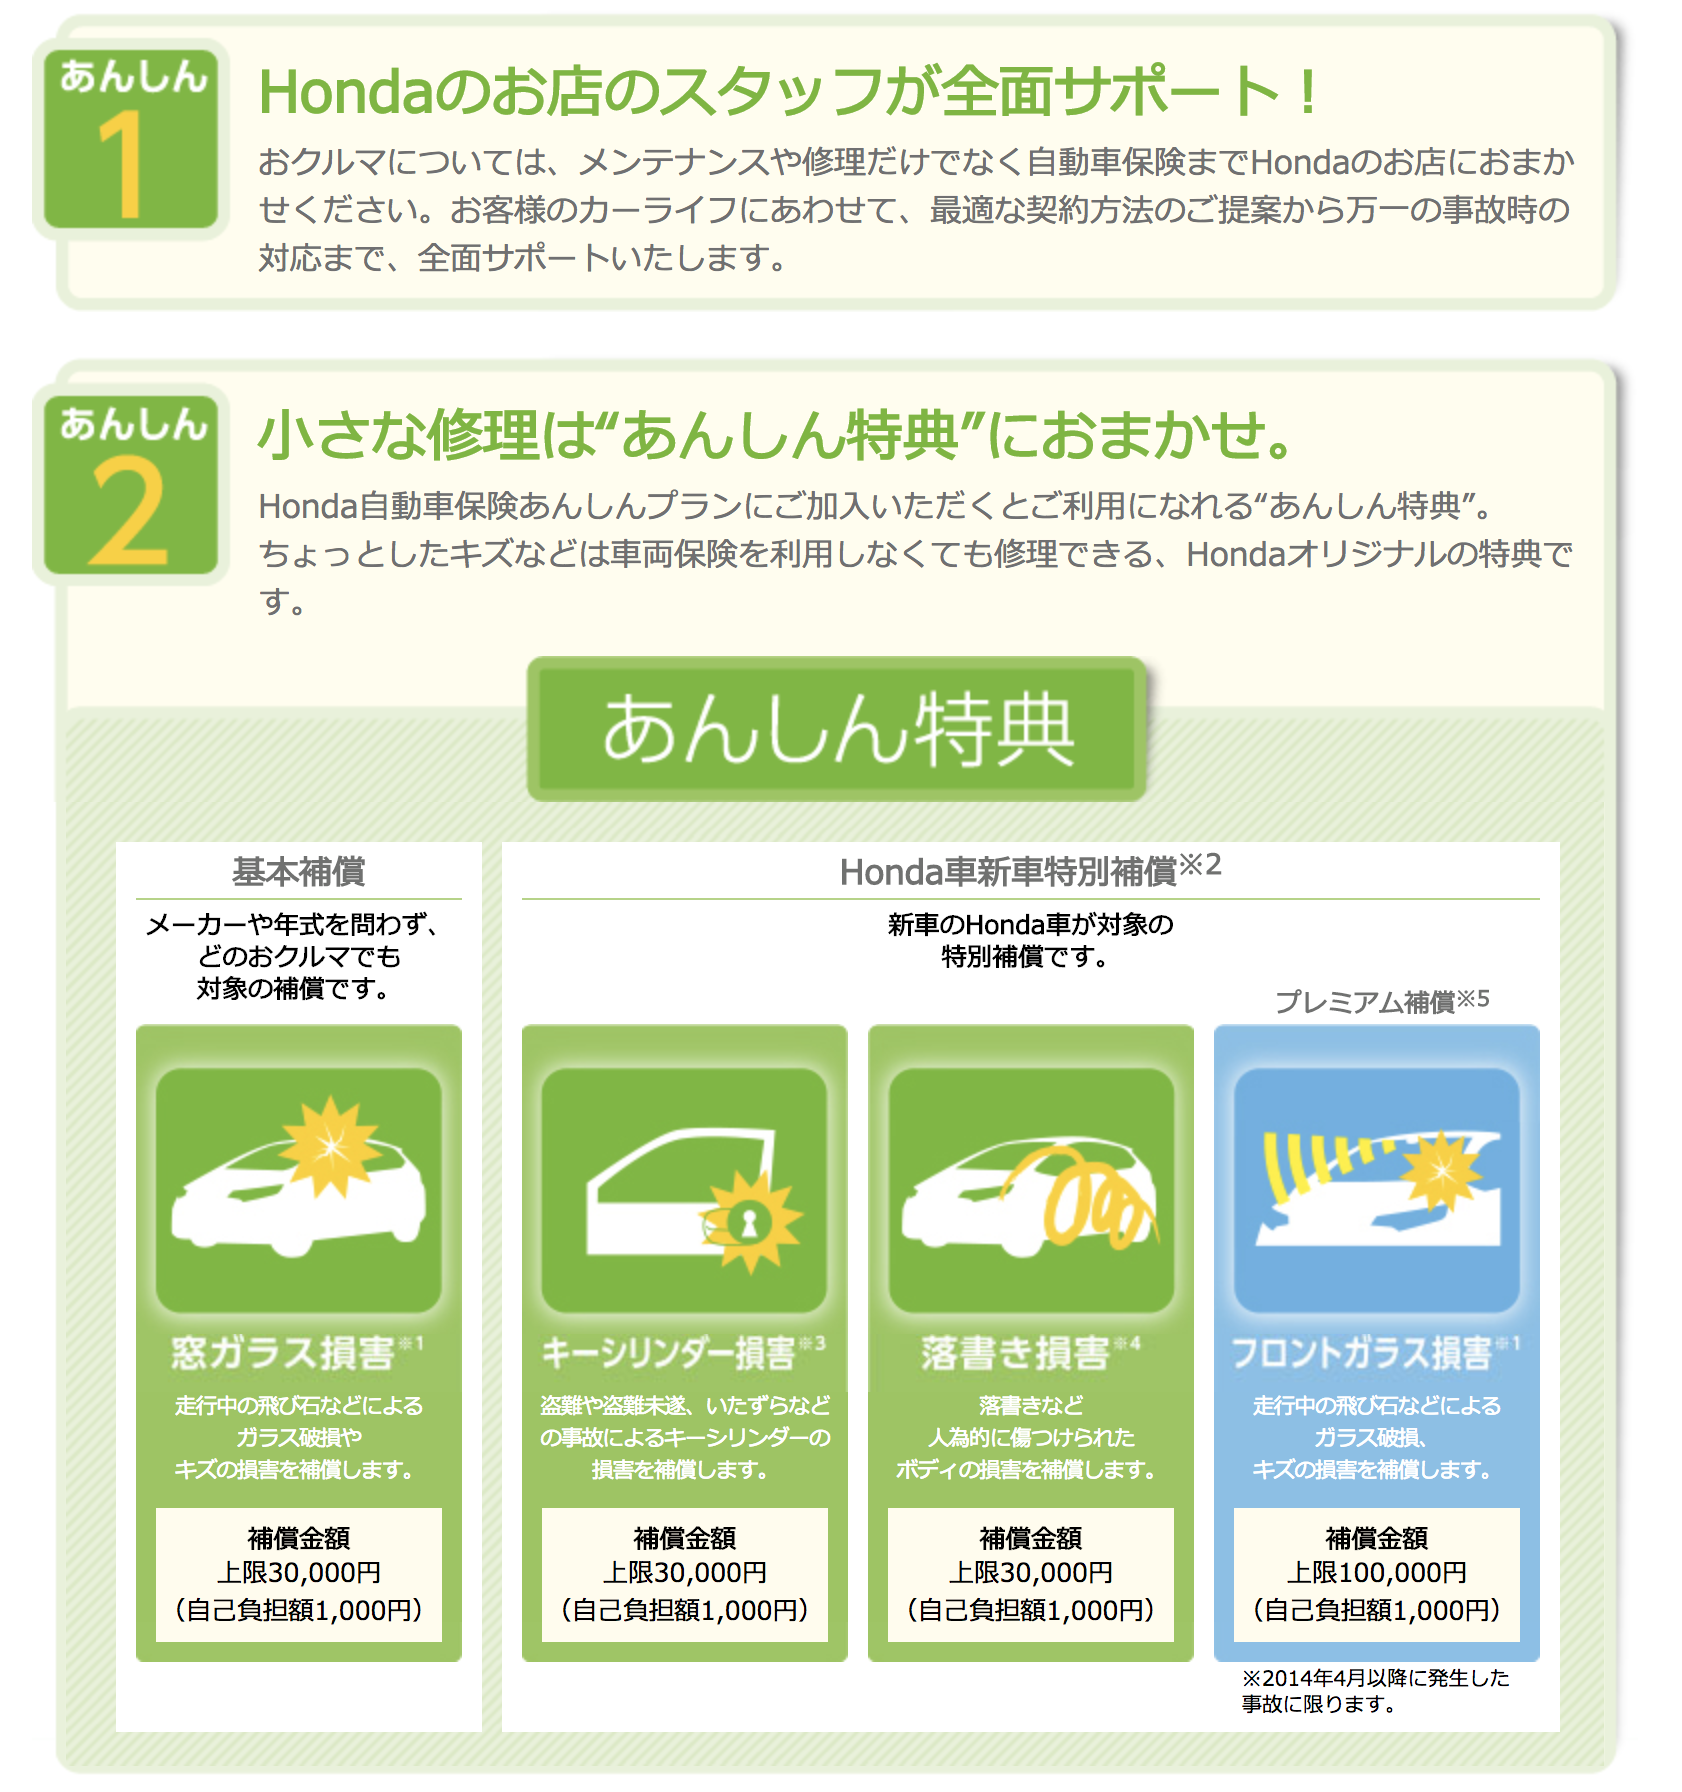 Hondaの自動車保険 あんしんプラン ブランド保険ならではの魅力とは Honda Local 宮崎県ホンダカーズブログ